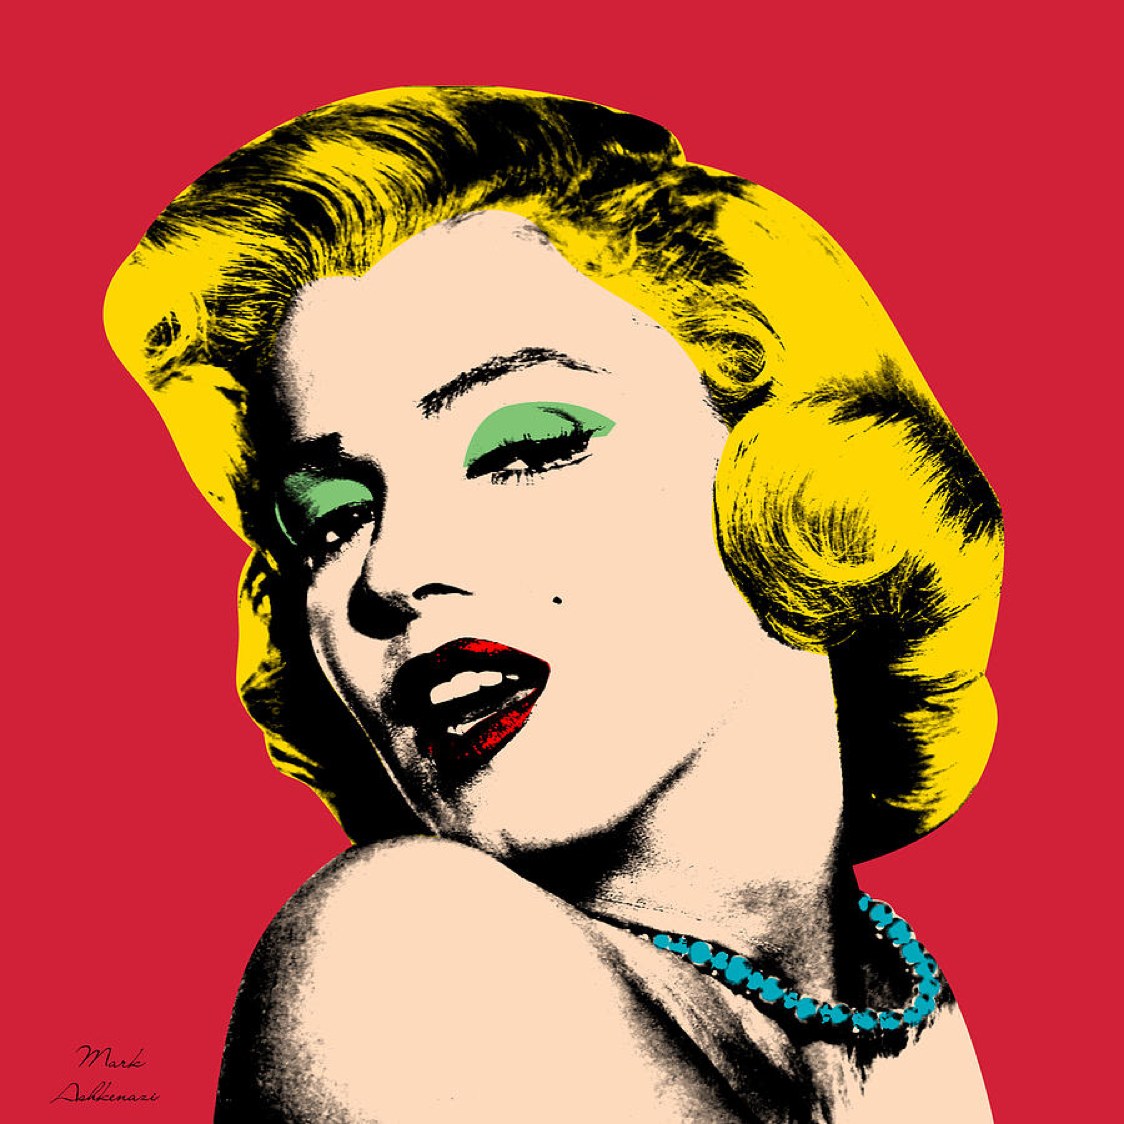 Tạo hình diễn viên Marilyn theo phong cách Pop Art